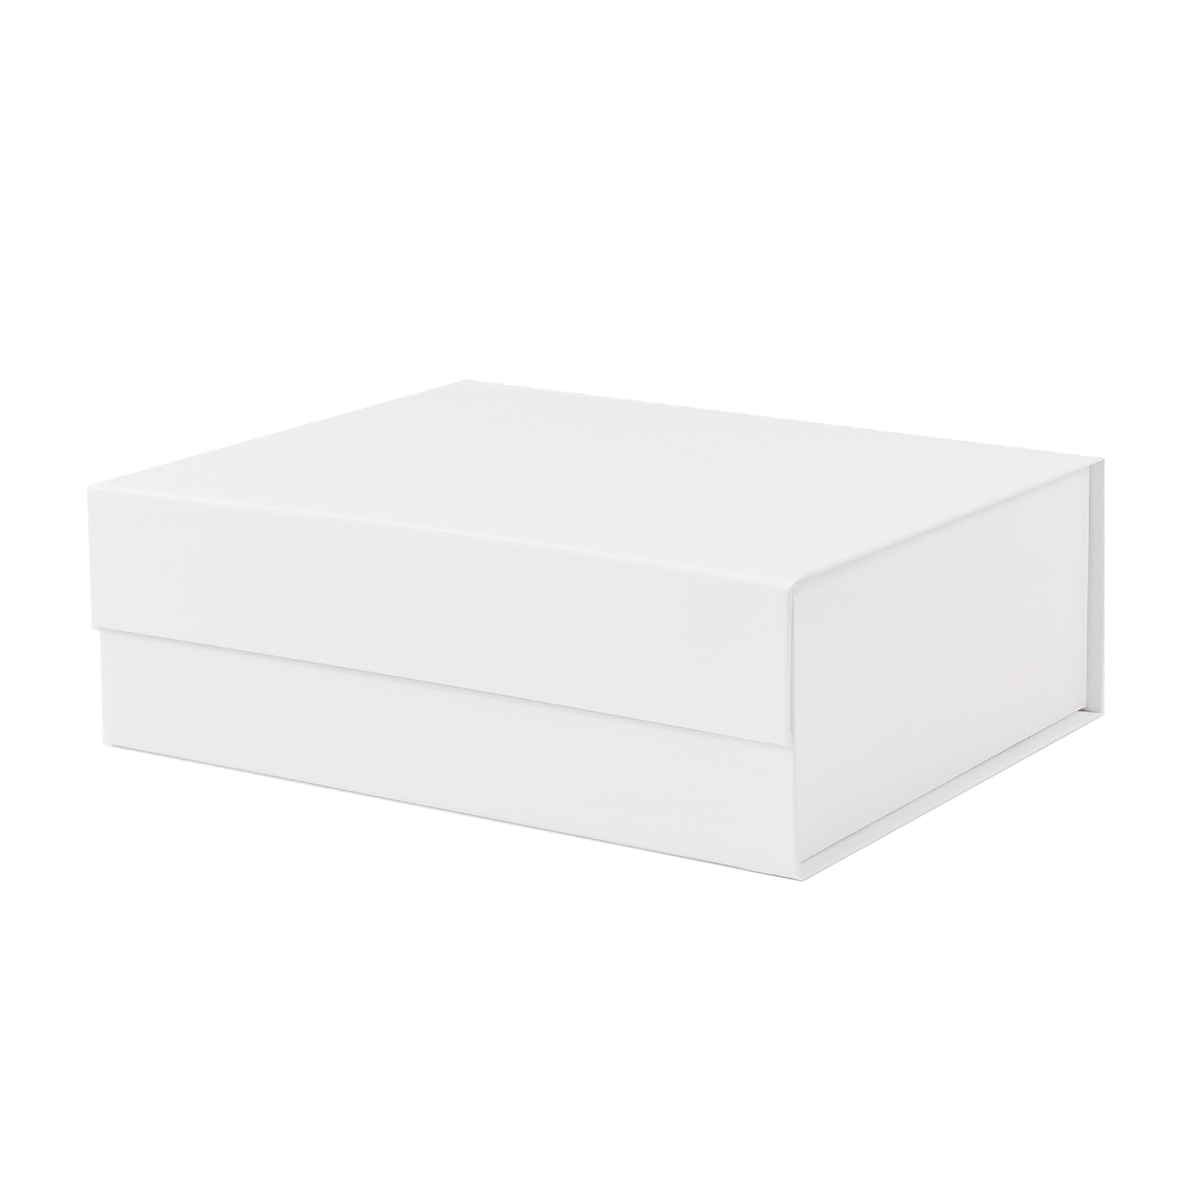 Sample  - White Medium Rectangle Magnetic Gift Box